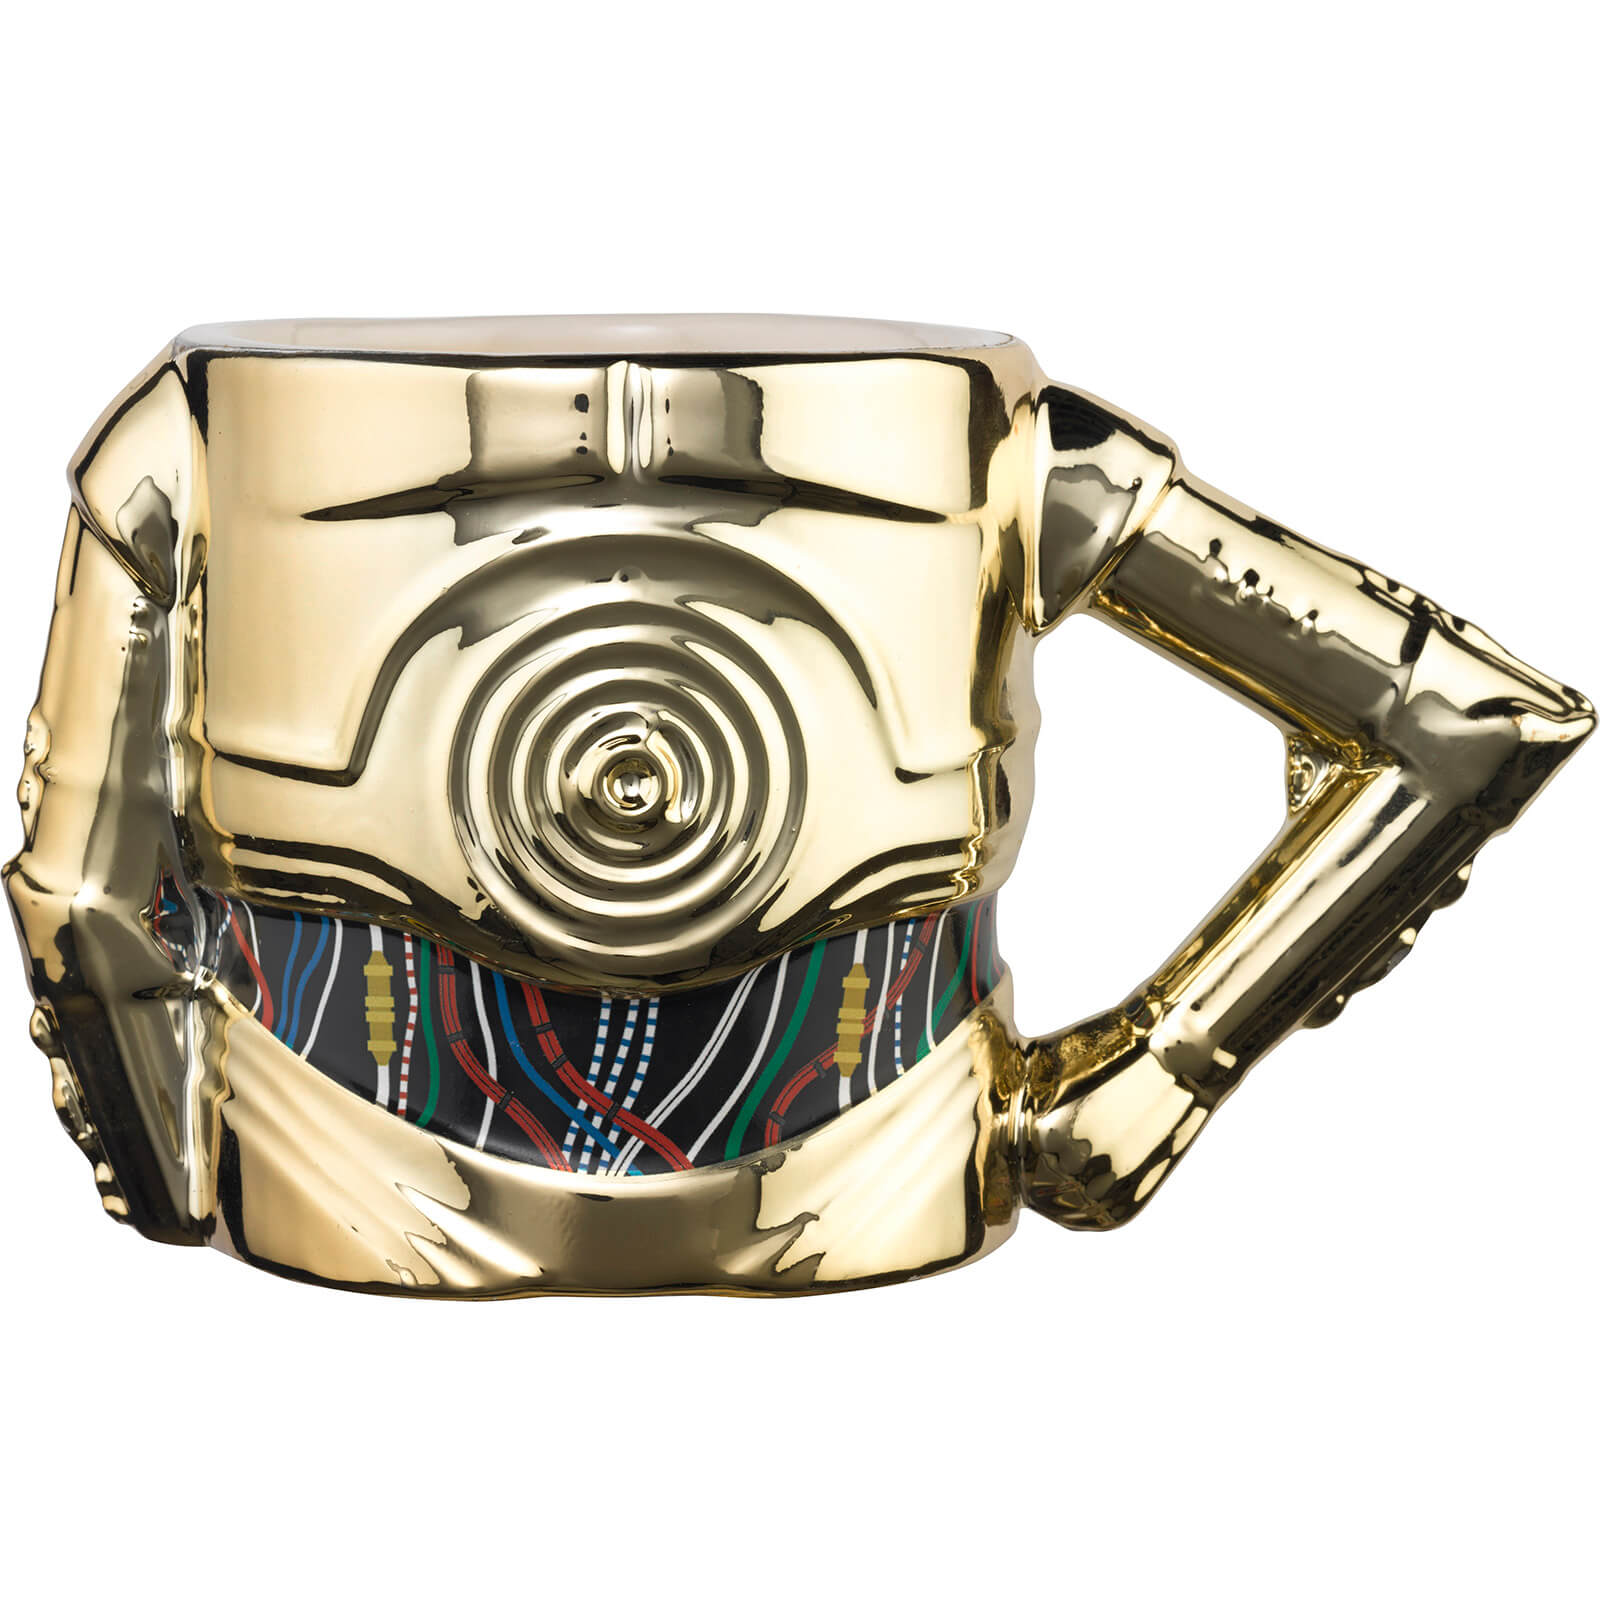 Exquisite Gaming Meta Merch Star Wars 3D C 3PO mok met arm online kopen